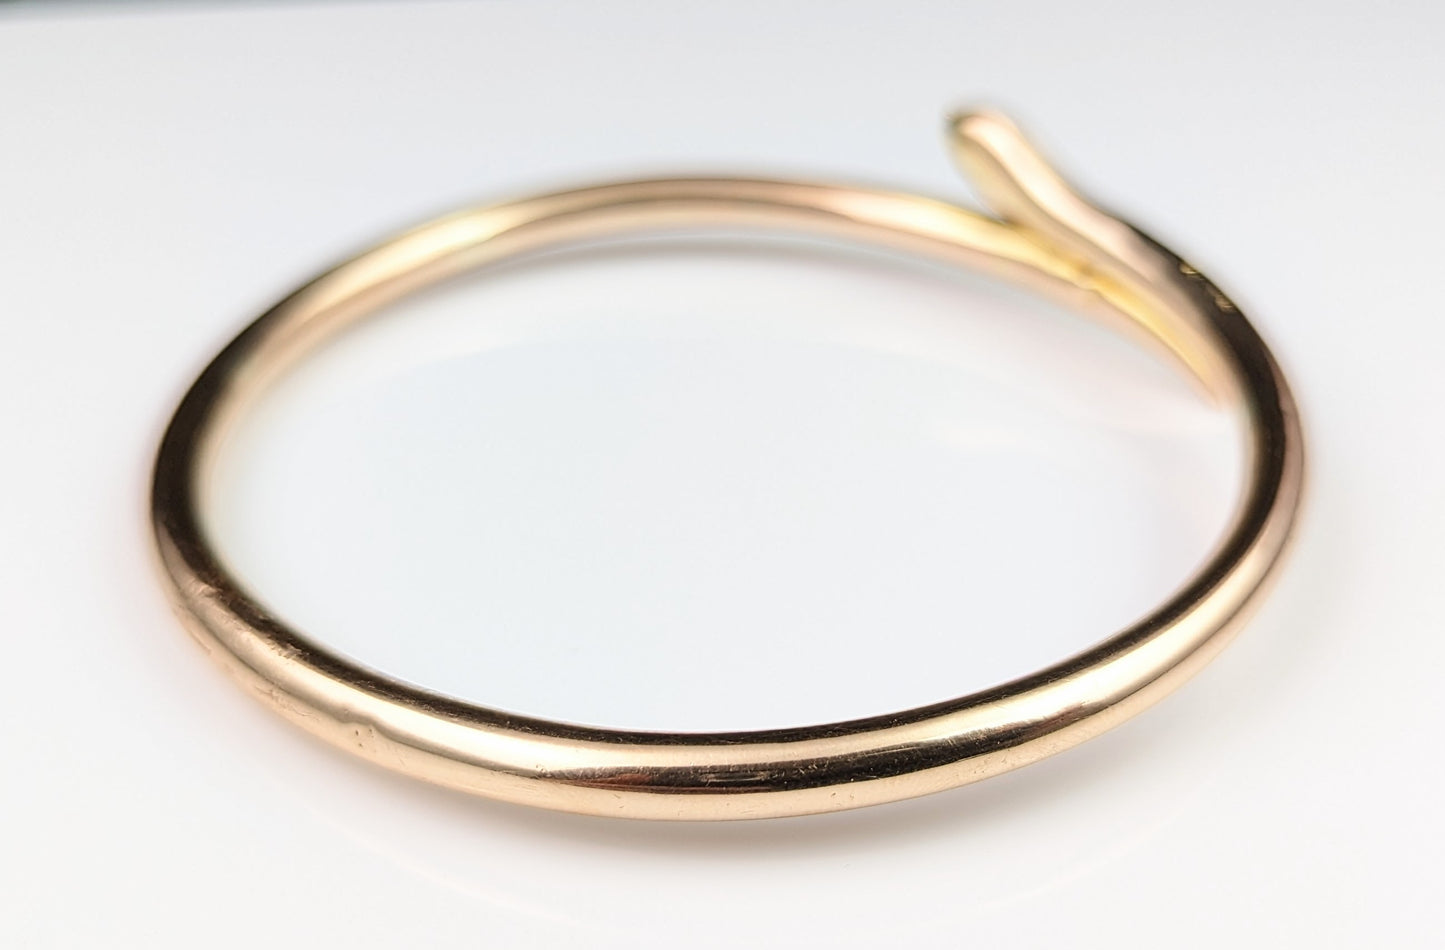 Antique 9ct gold Snake bangle, Upper Arm bracelet, Art Deco